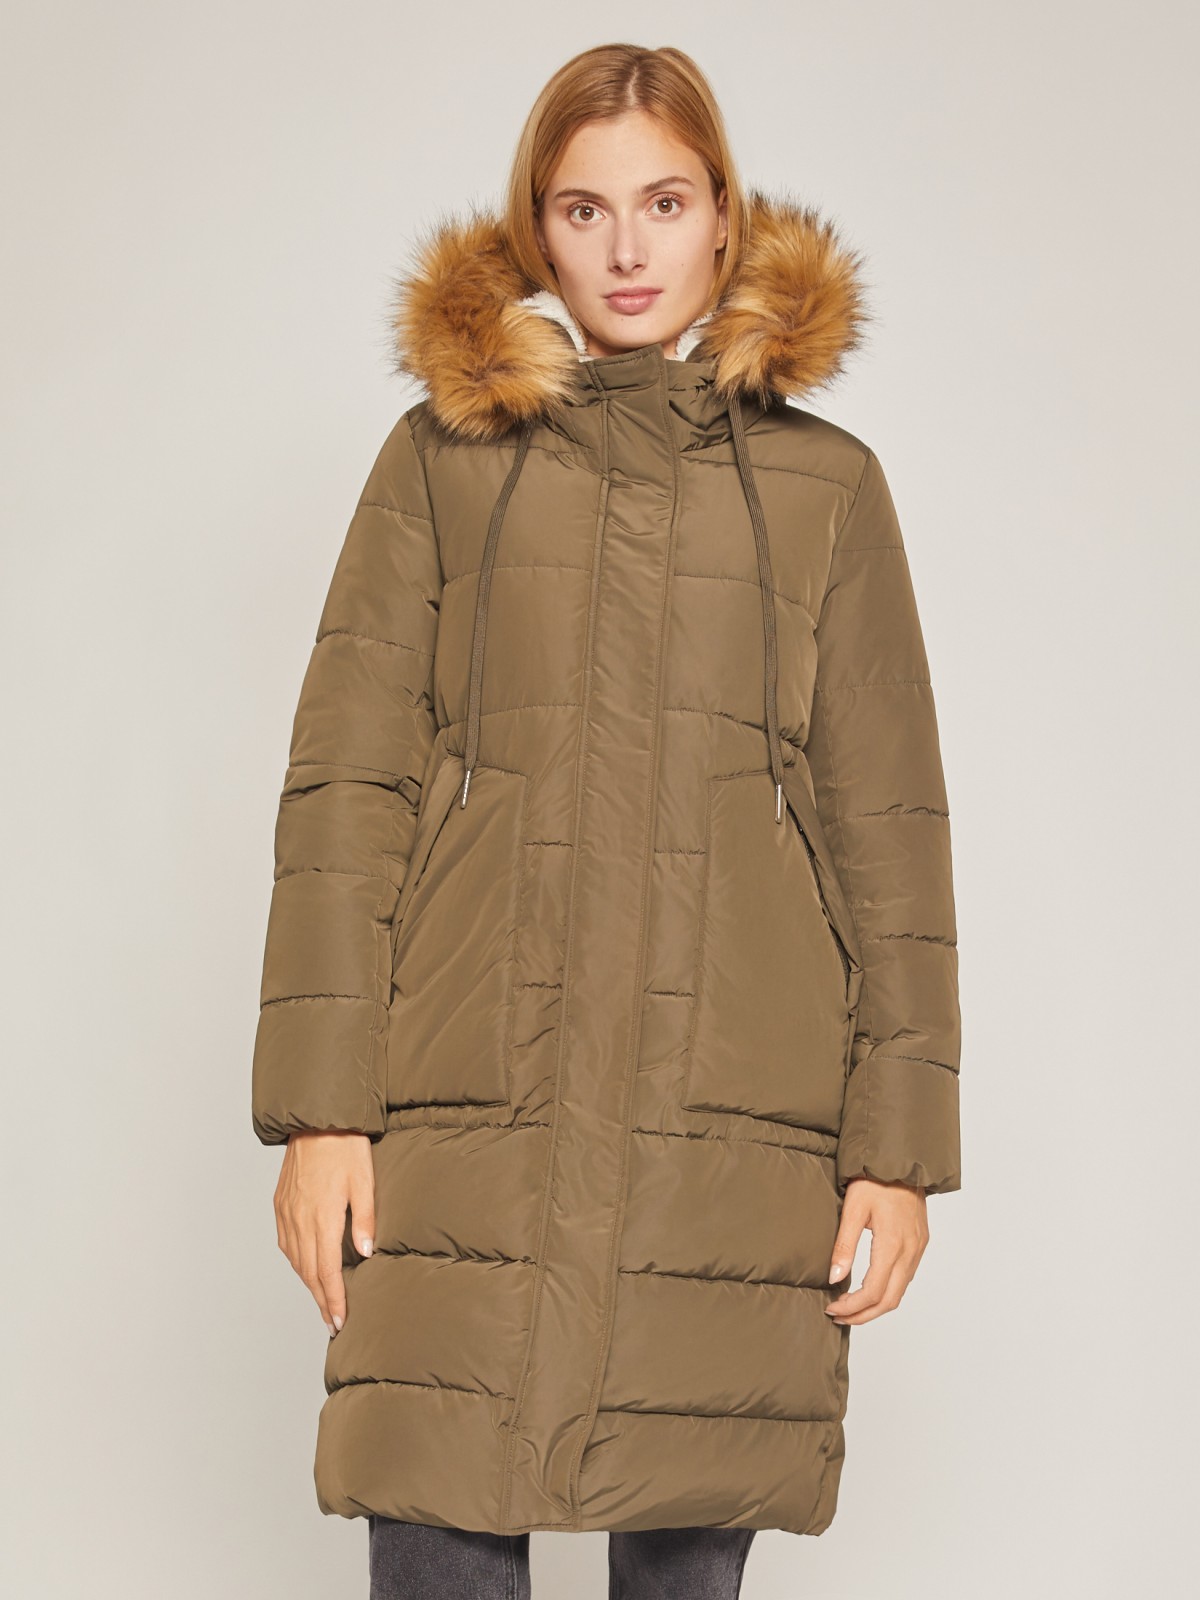 Тёплое удлинённое пальто zolla 020425212124, цвет хаки, размер XS - фото 1